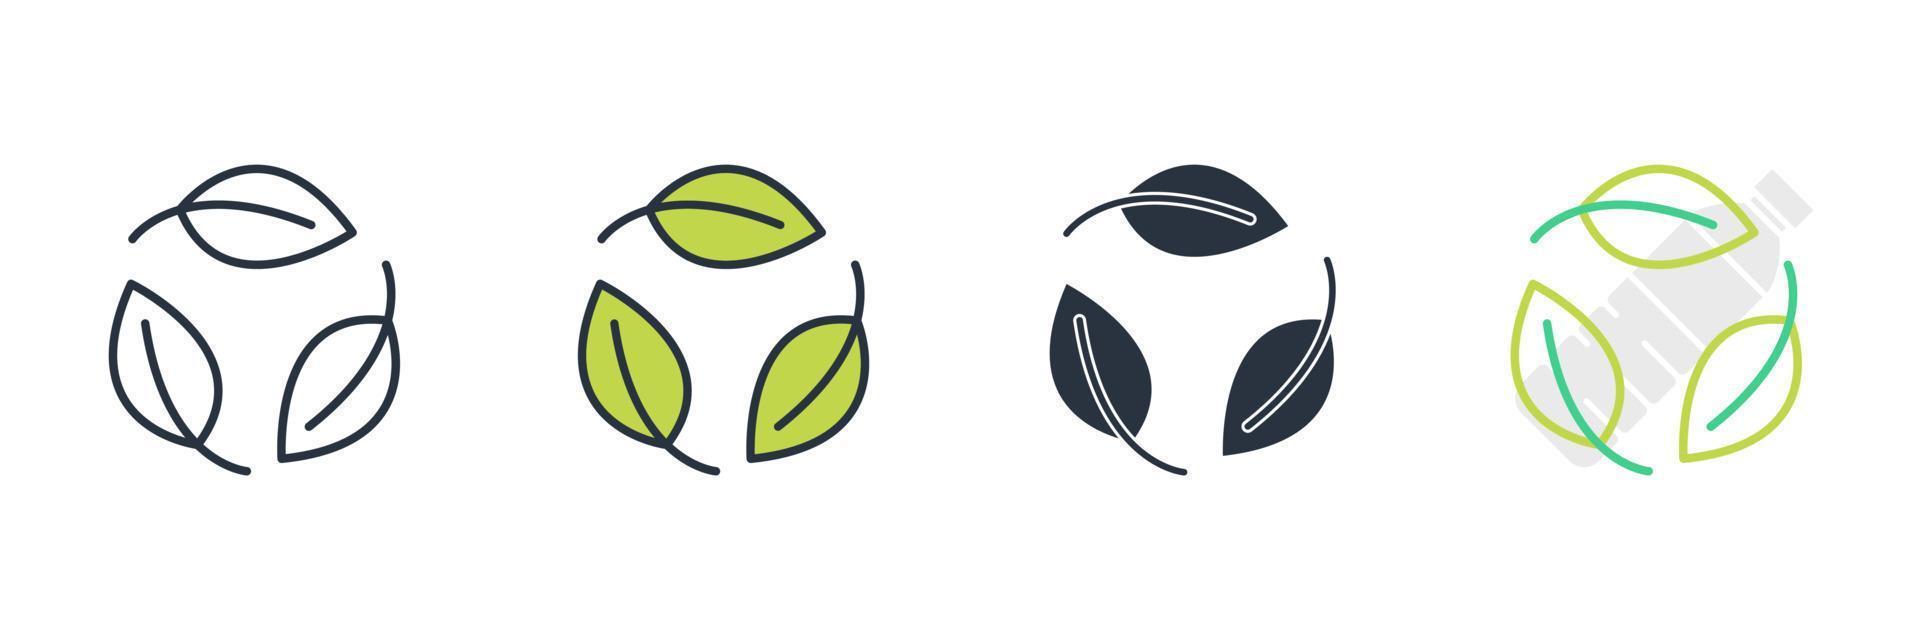 illustrazione vettoriale del logo dell'icona di riciclaggio. riciclare il modello di simbolo per la raccolta di grafica e web design